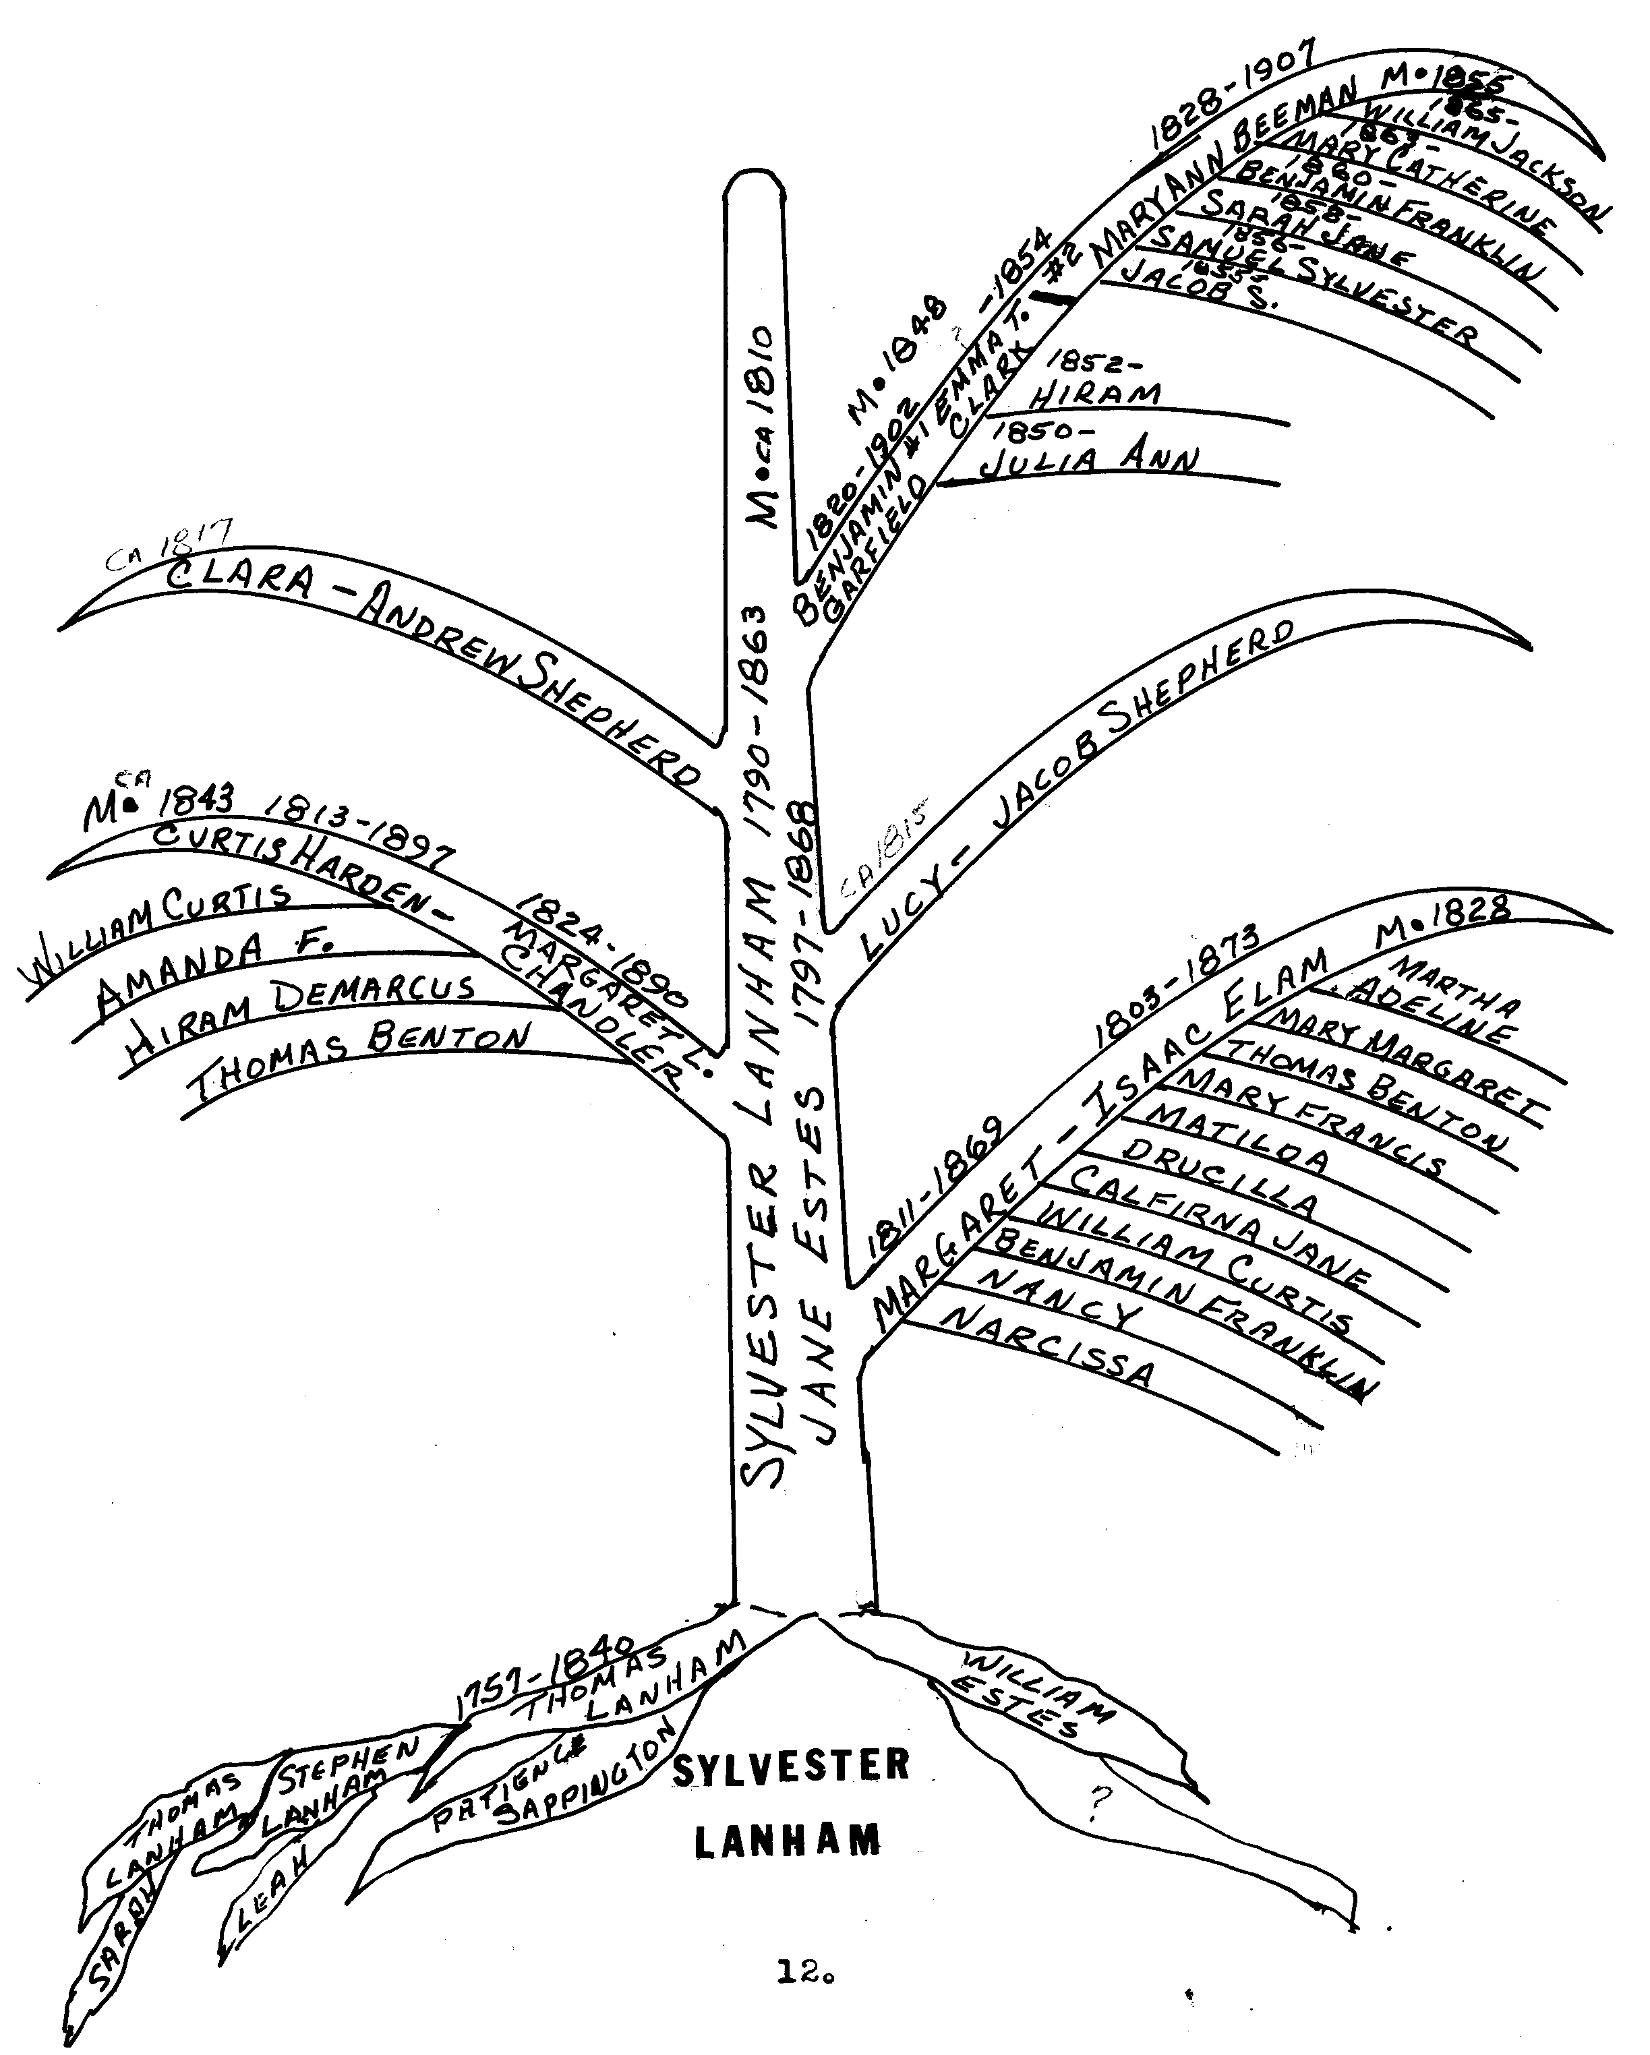 Hand drawn Family Tree